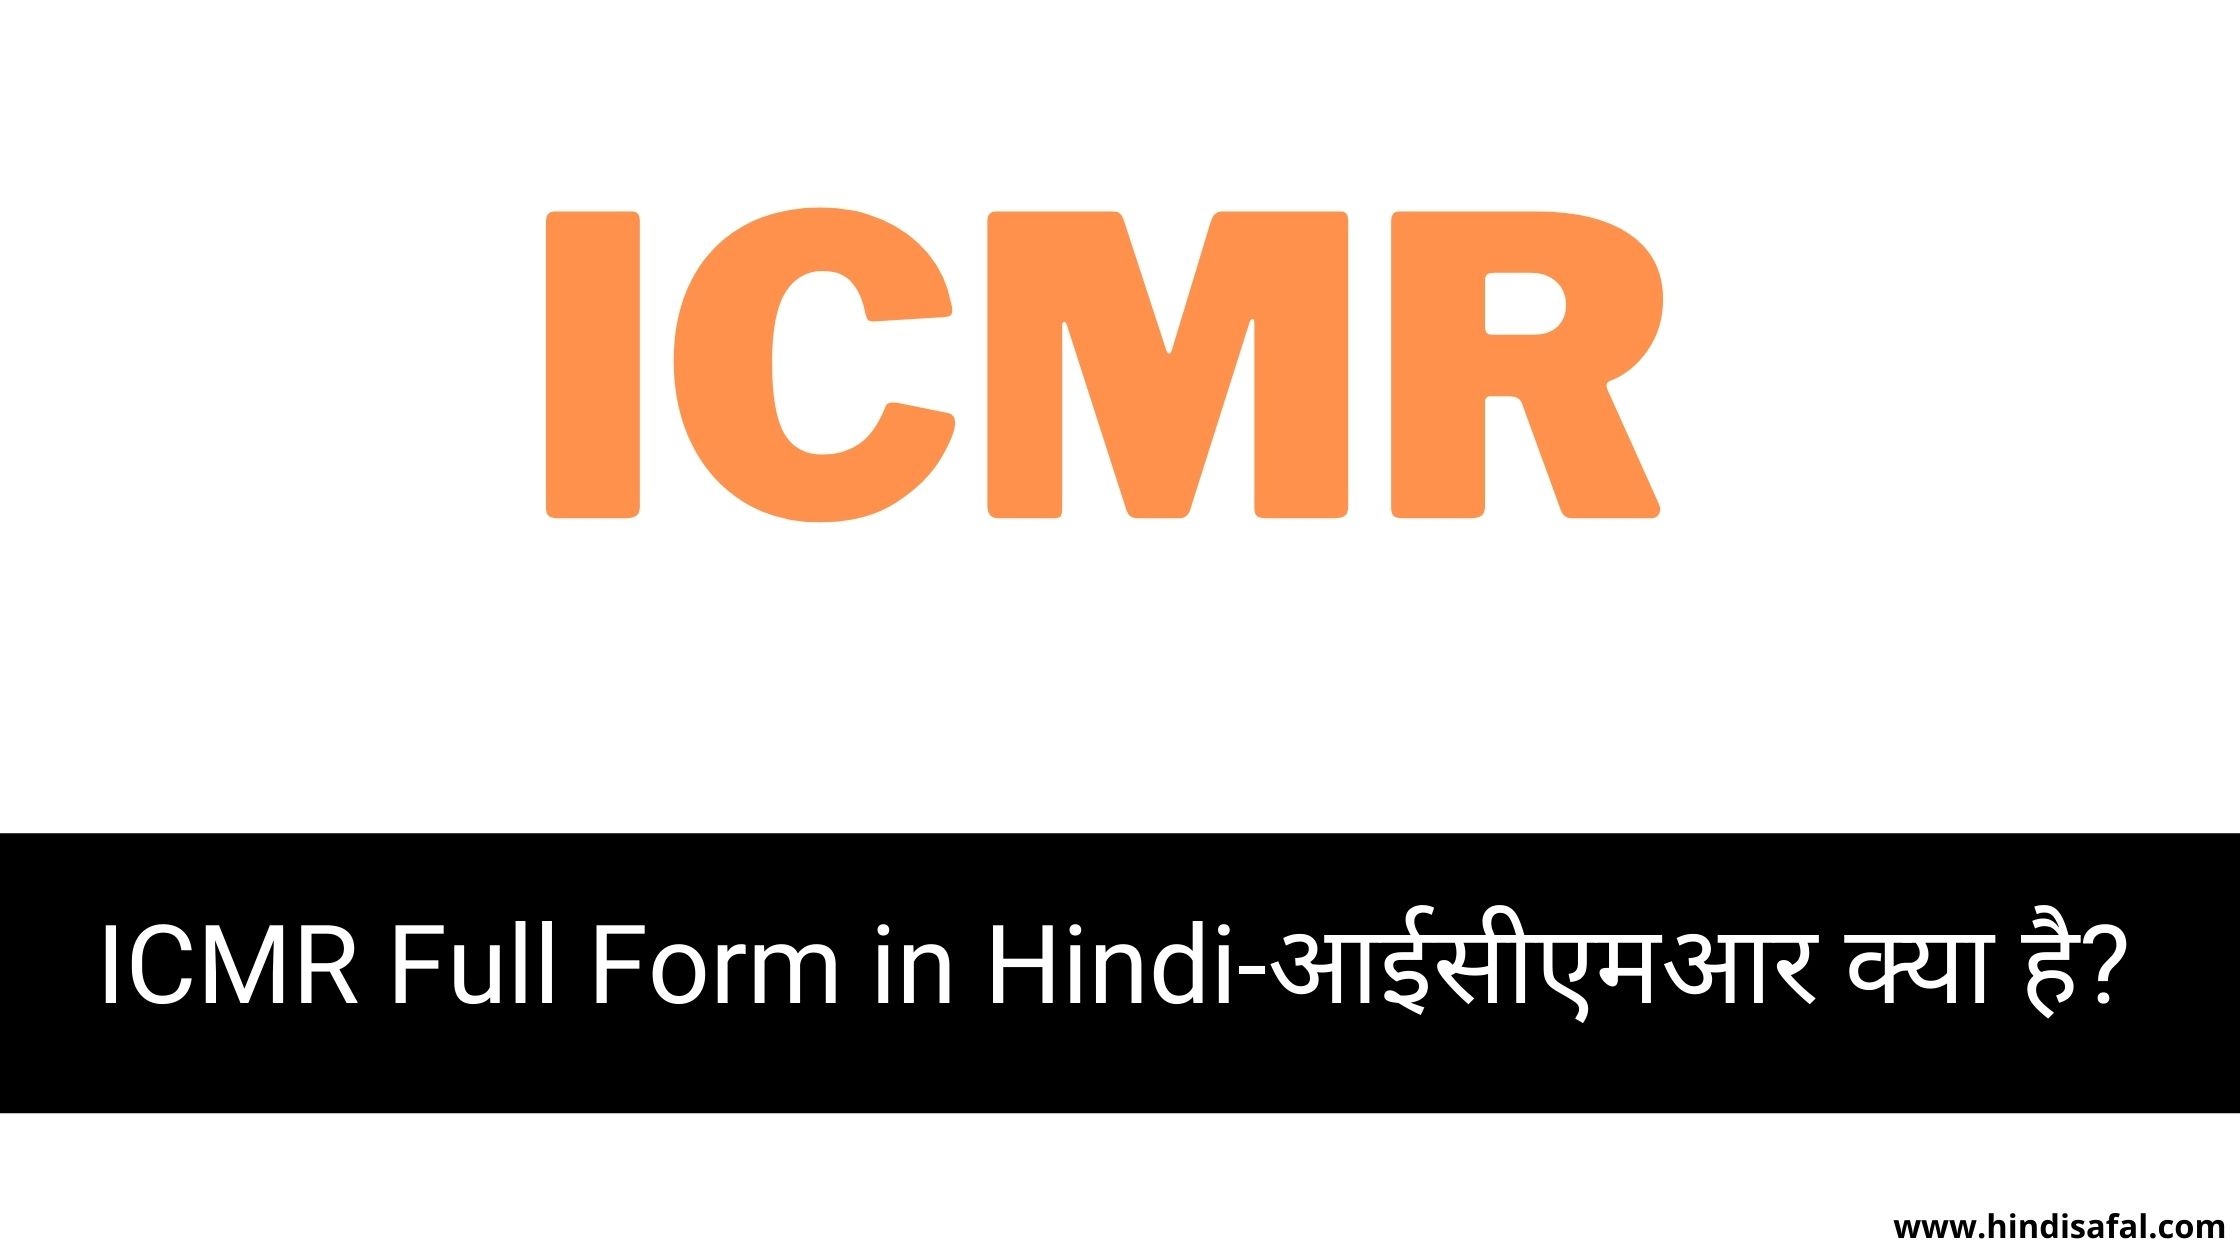 ICMR Full Form in Hindi